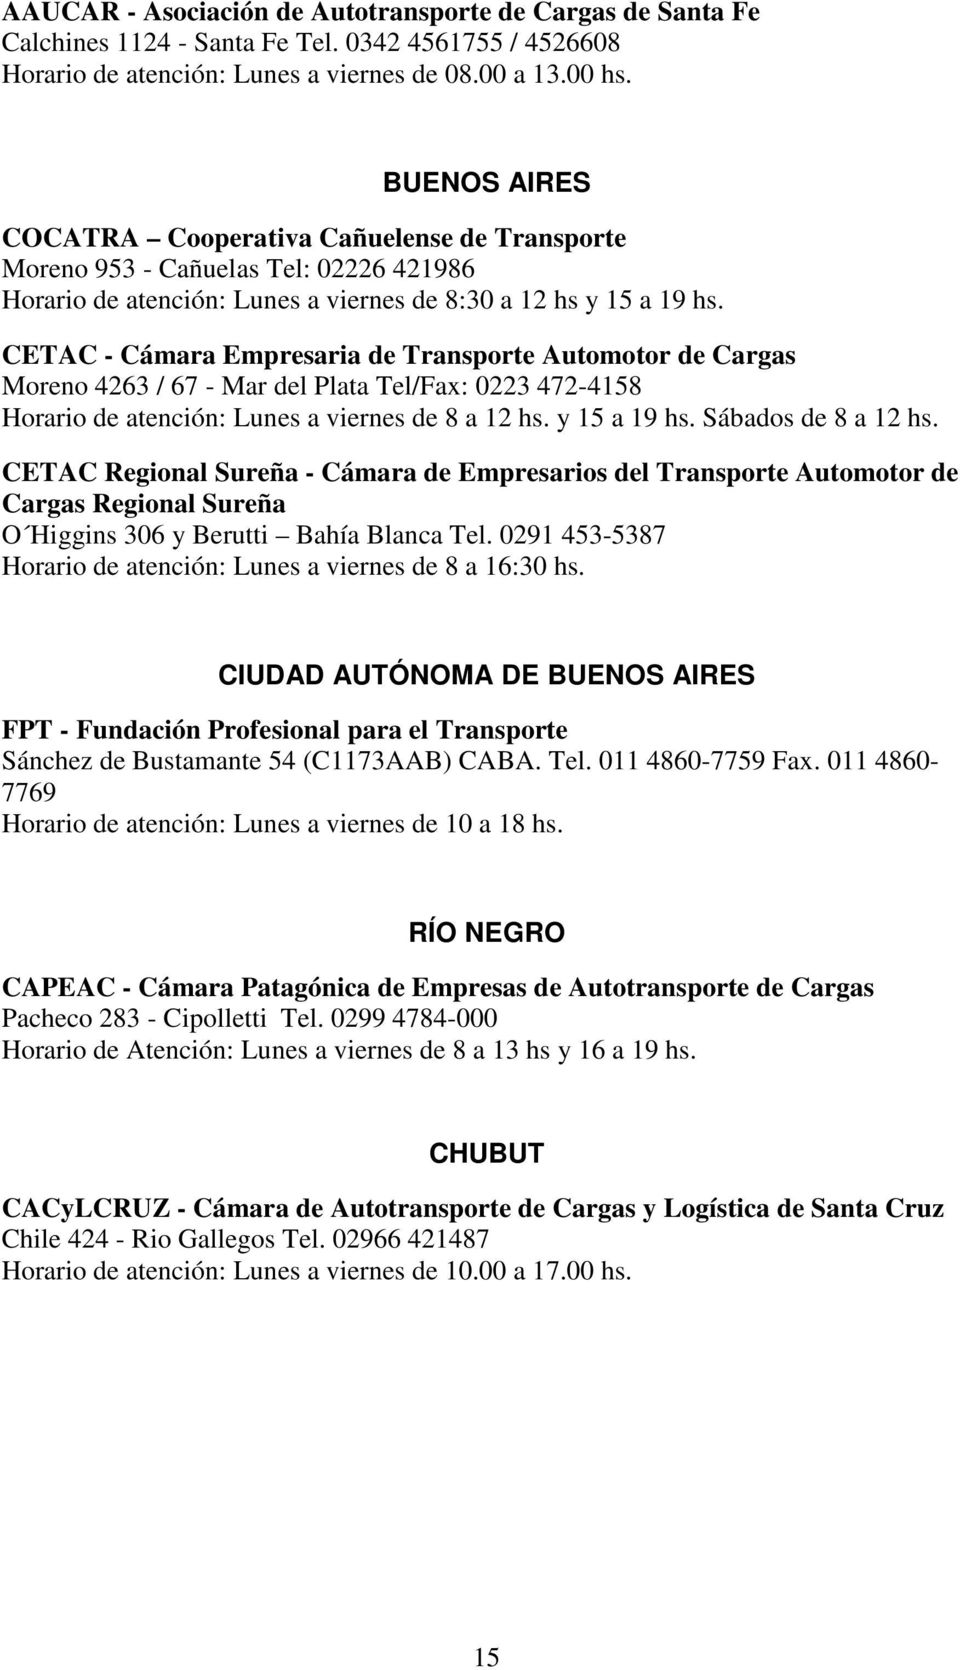 CETAC - Cámara Empresaria de Transporte Automotor de Cargas Moreno 4263 / 67 - Mar del Plata Tel/Fax: 0223 472-4158 Horario de atención: Lunes a viernes de 8 a 12 hs. y 15 a 19 hs.